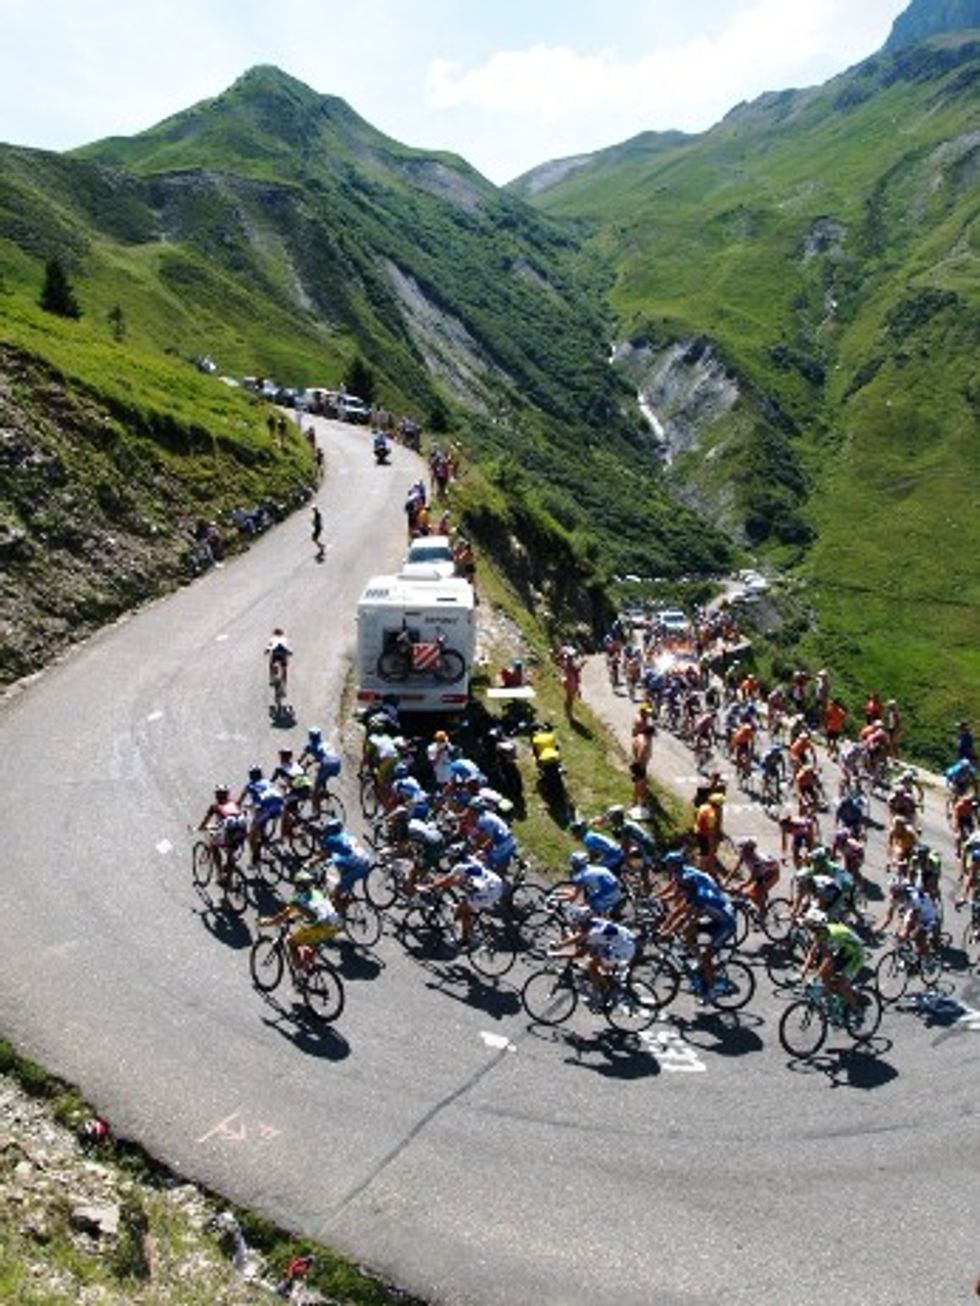 Five Spots to Watch the Tour de France